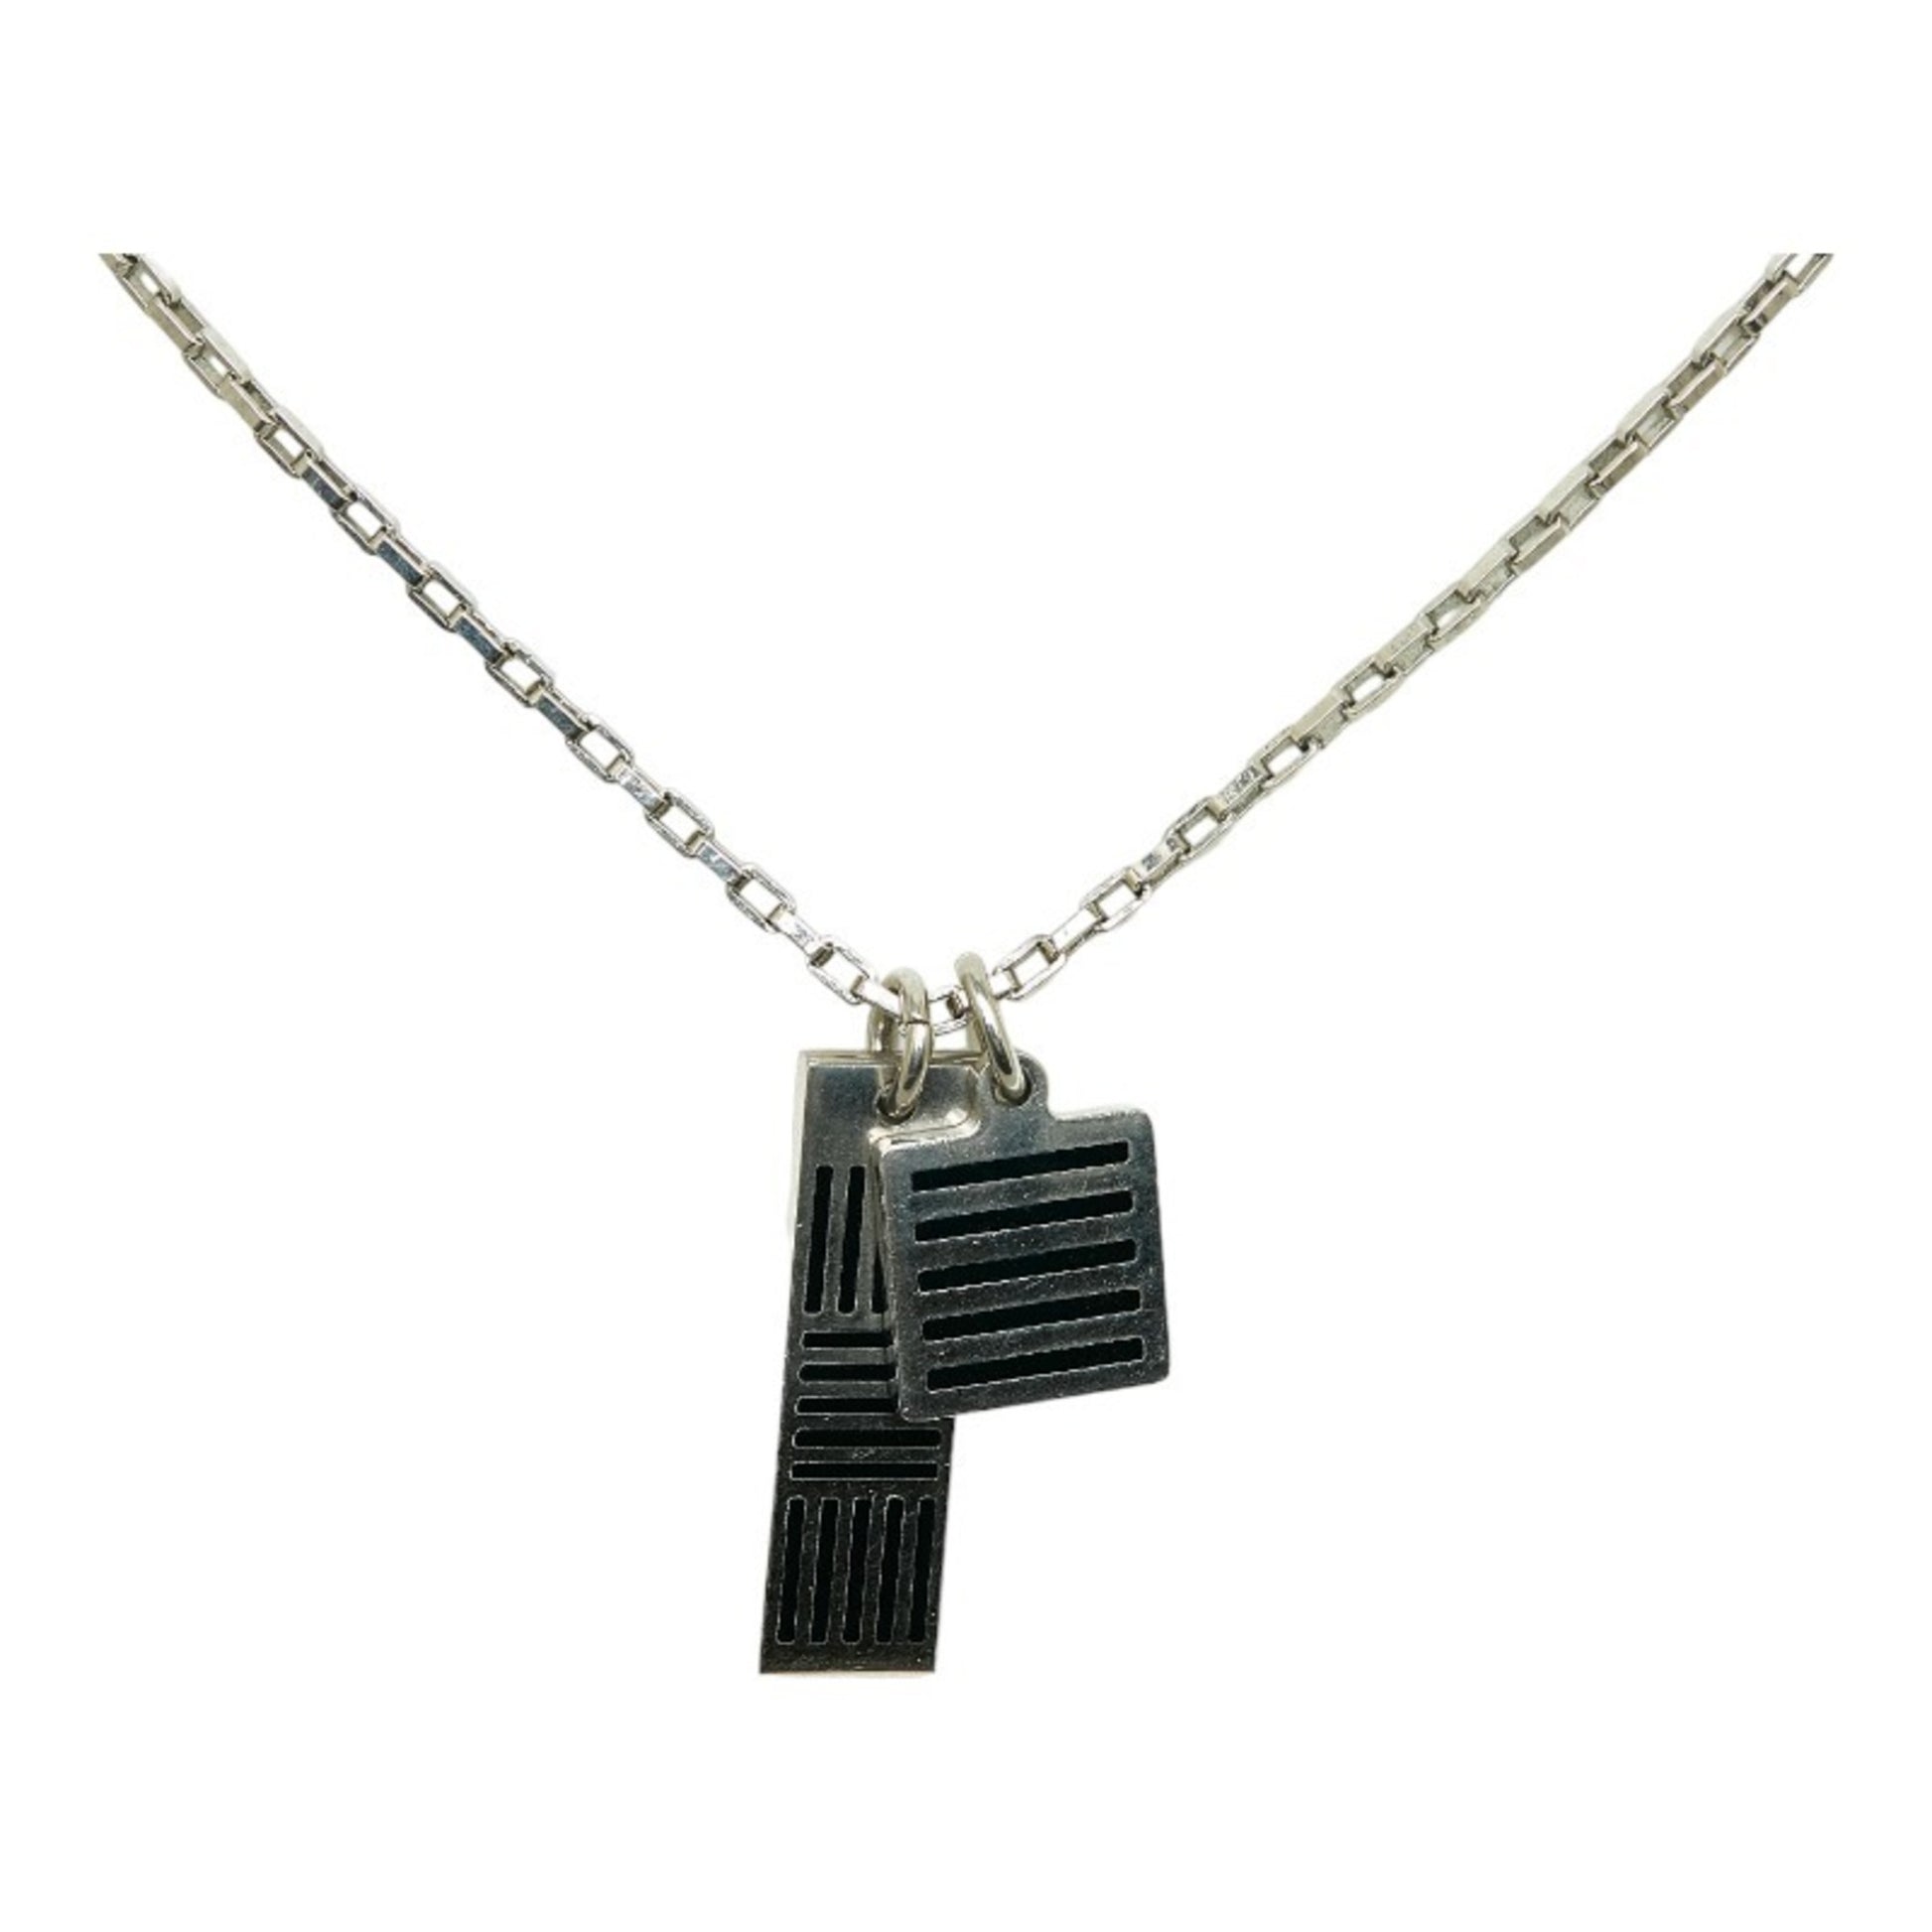 LOUIS VUITTON necklace Damier black Damier Ebene M62490 silver